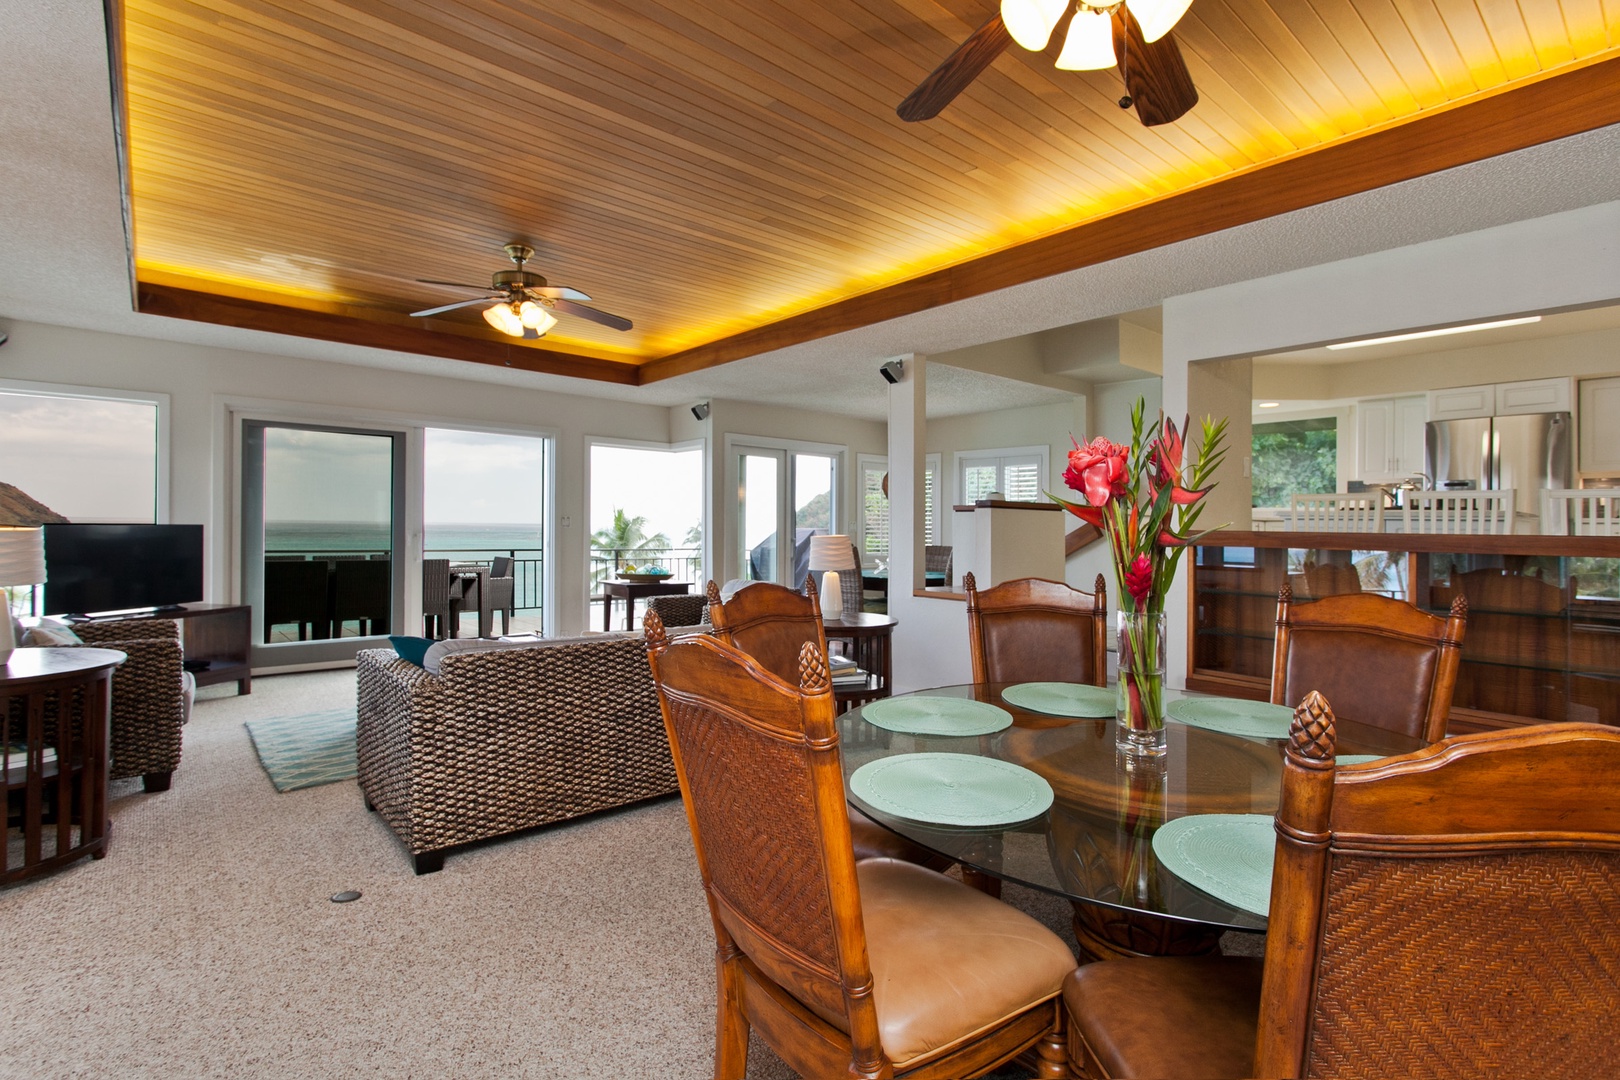 Kailua Vacation Rentals, Lanikai Village* - Hale Kolea: Dining area overlooking the lanai and ocean.